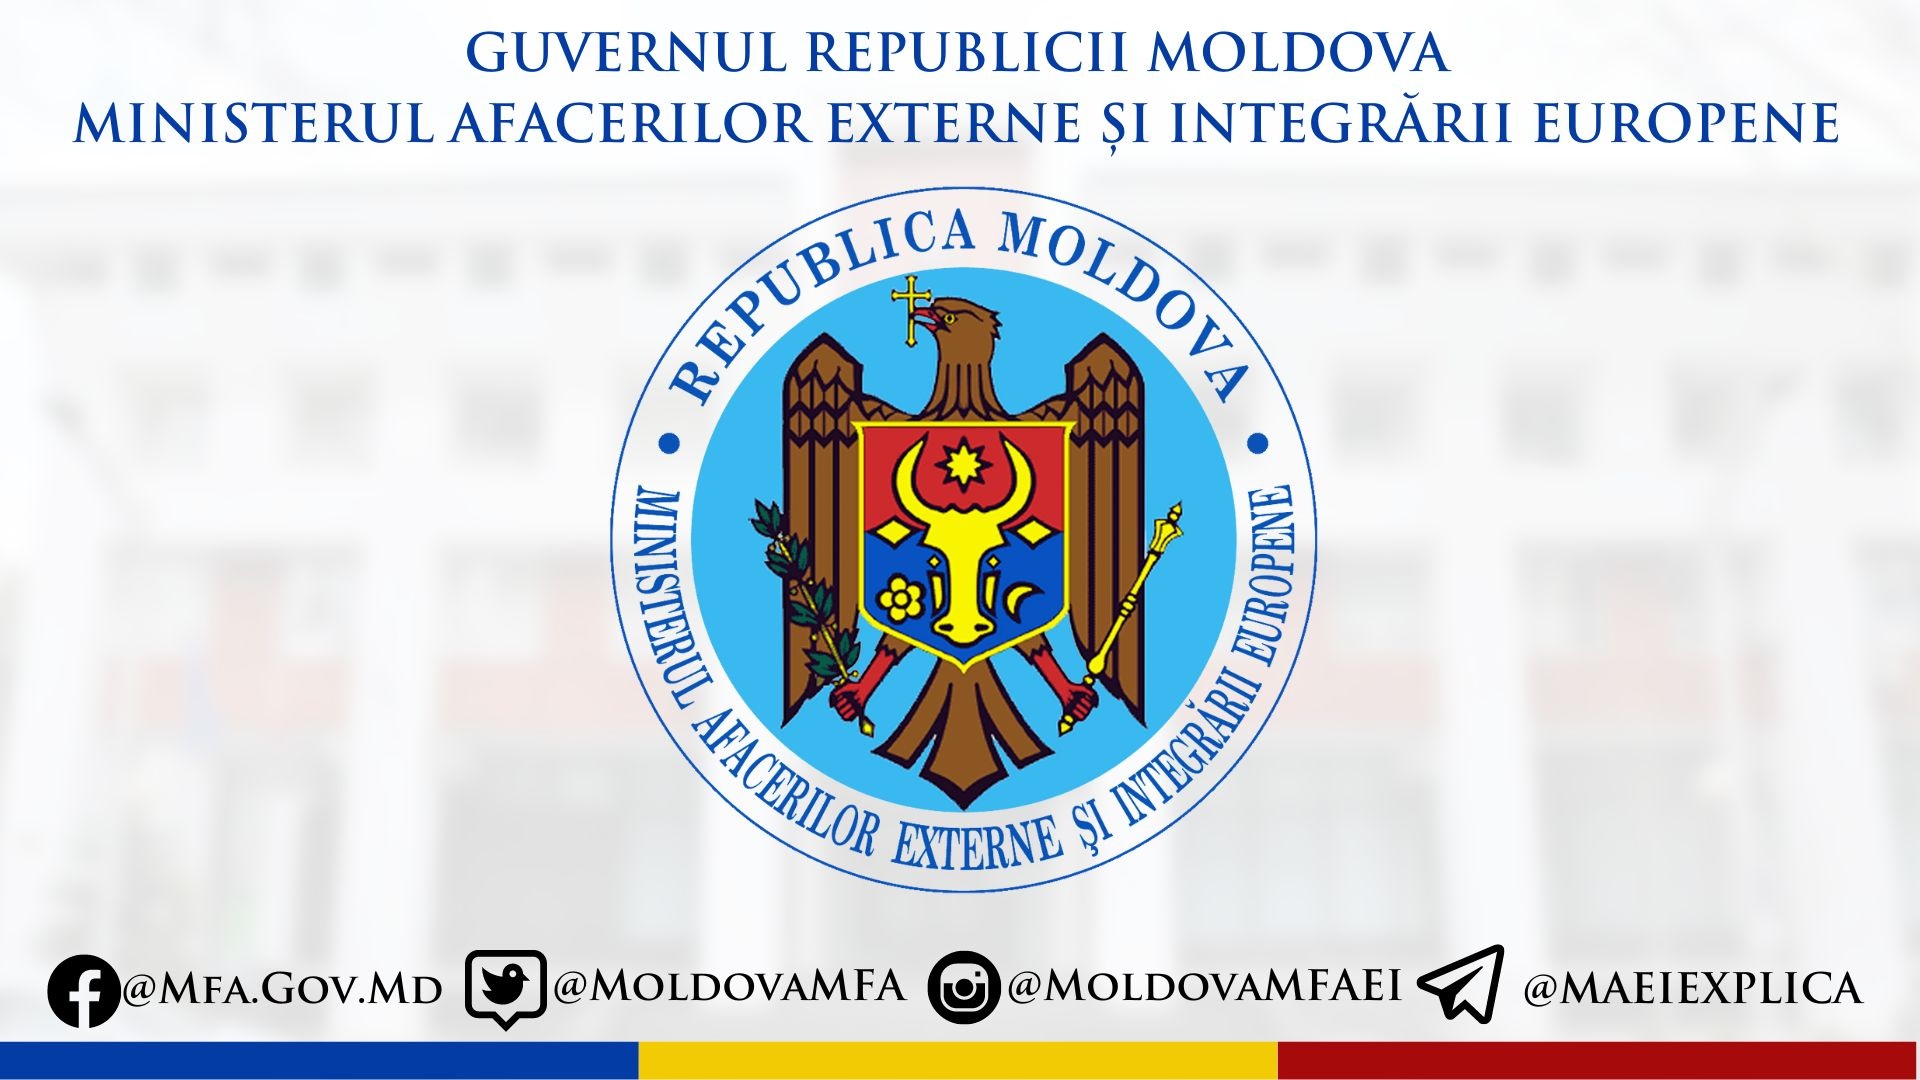 MAEIE Moldova